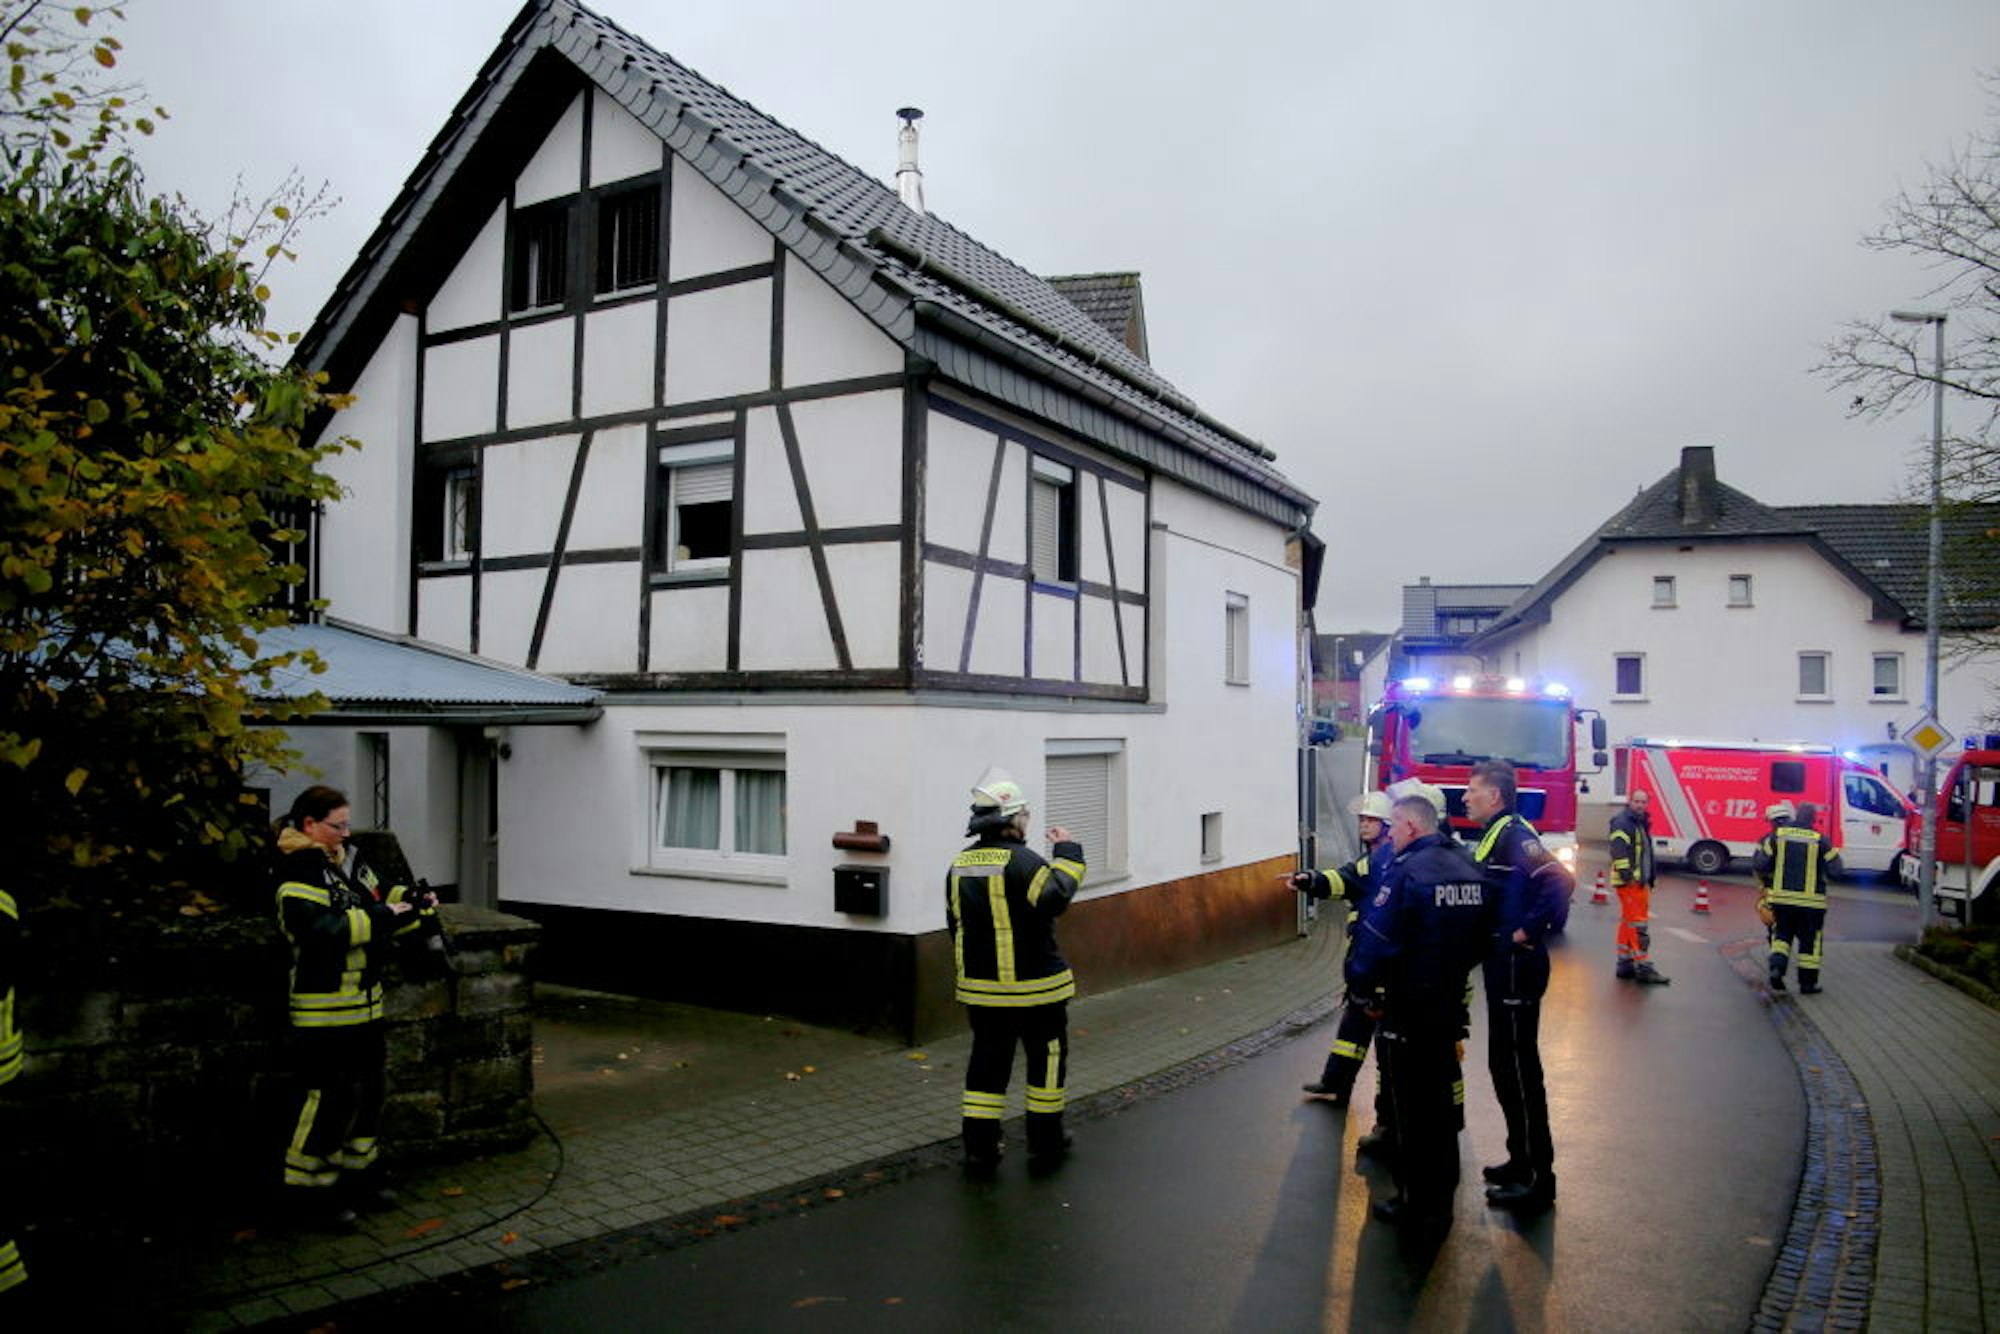 Für reichlich Frischluft im Haus des älteren Ehepaares sorgten die Feuerwehrleute nach dem Kaminbrand.